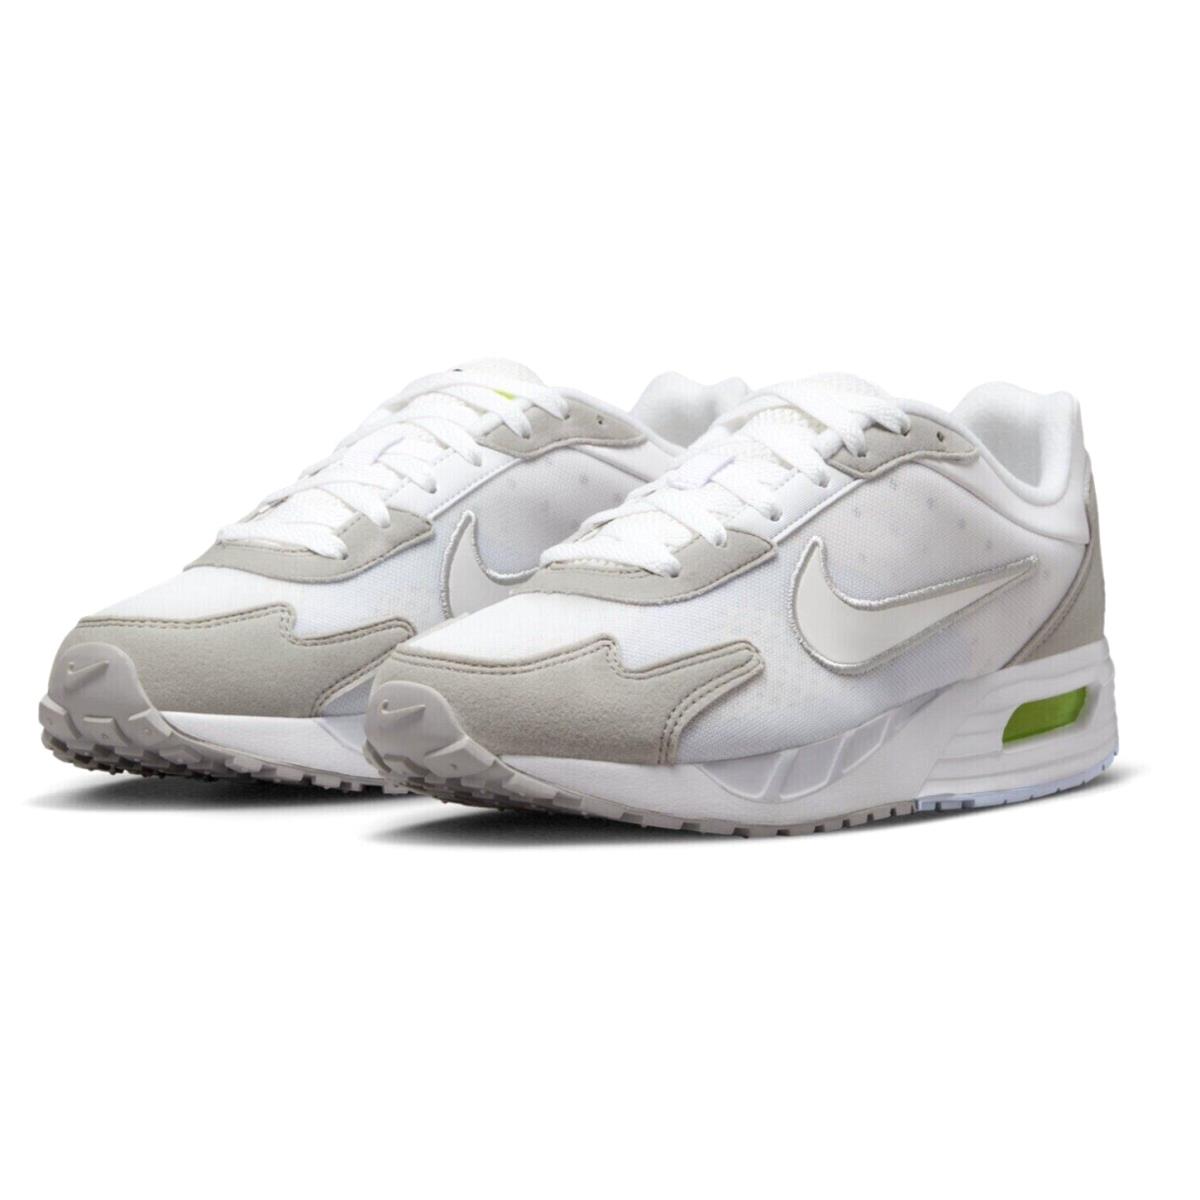 Nike Air Max Solo Mens Size 8.5 Shoes FN0784 003 Phantom White Football Gray - Gray